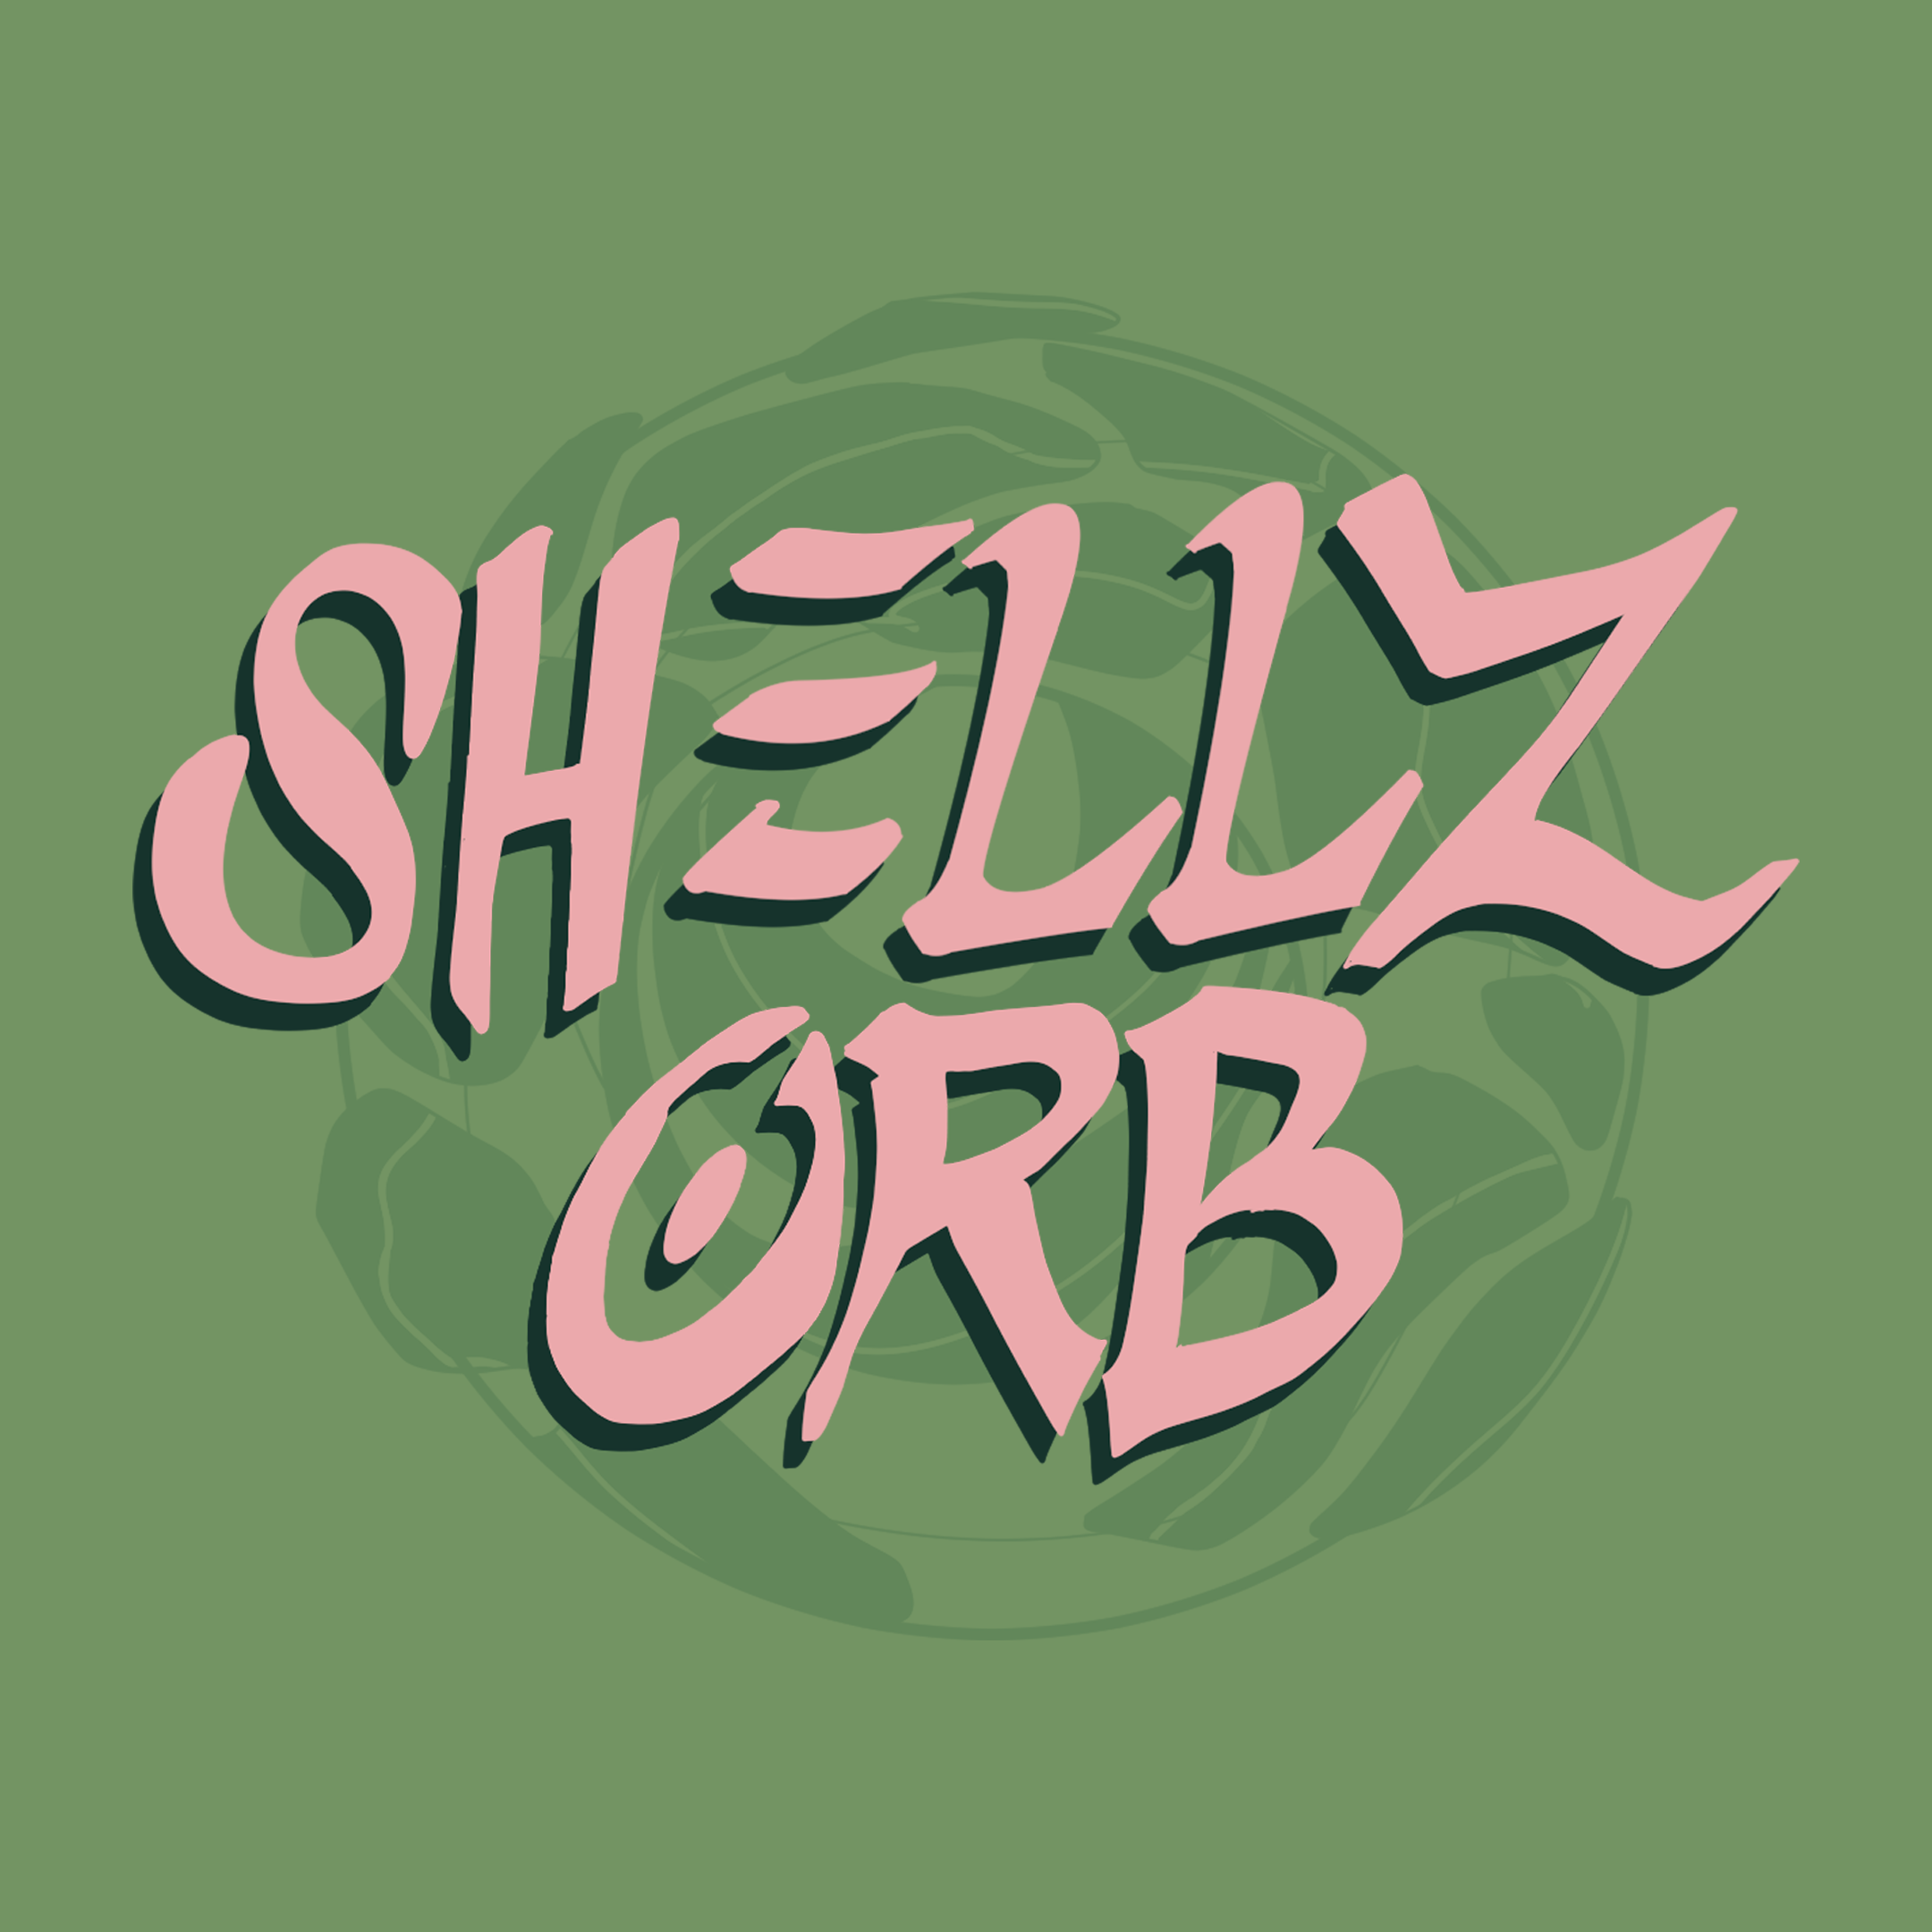 Shellz Orb banner